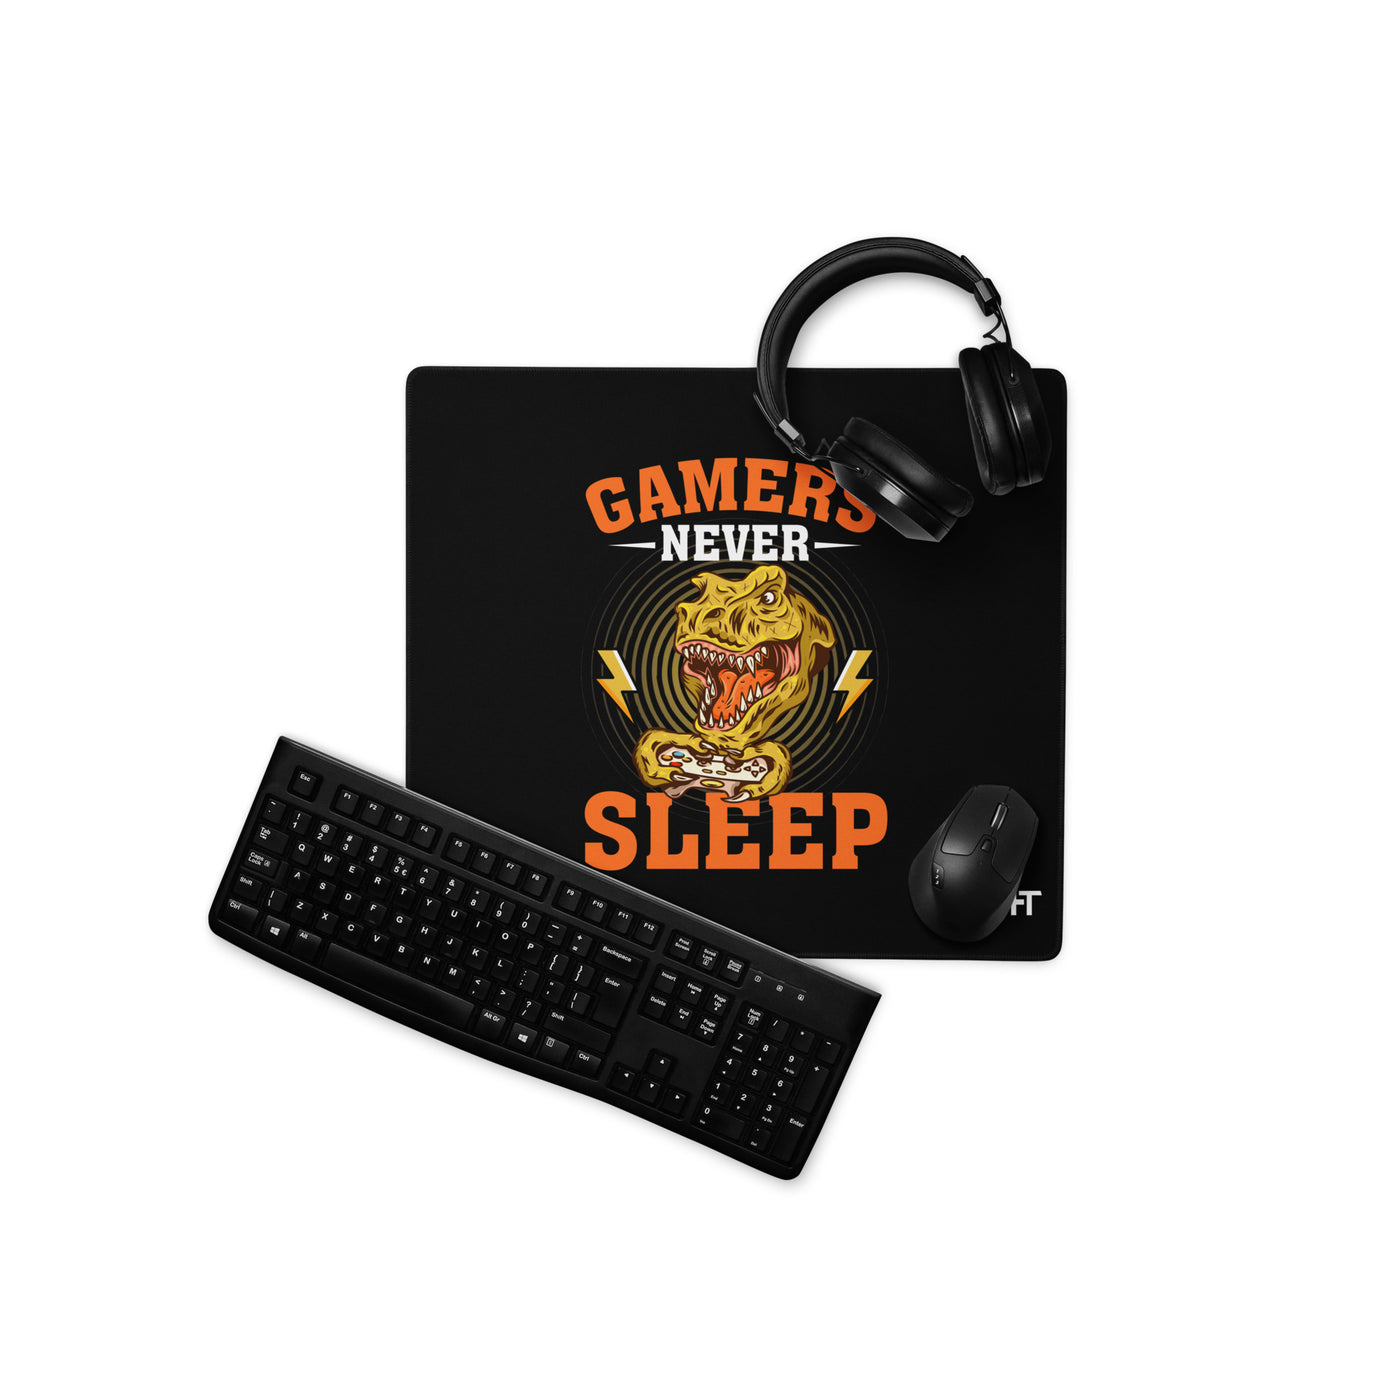 Gamers never sleep V2 - Desk Mat